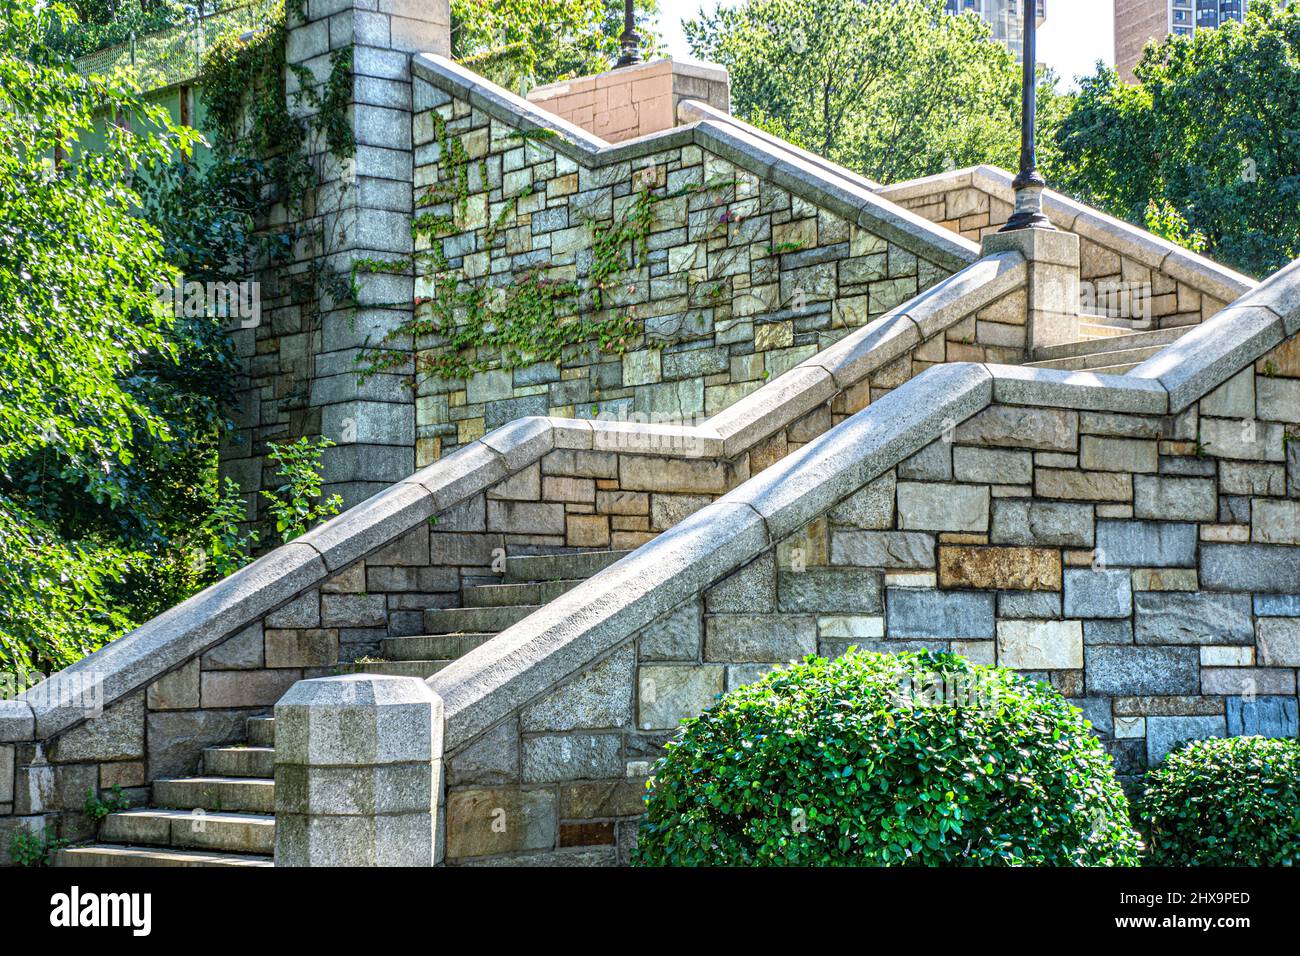 Granite Stairway, Fort Washington Park, Washington Heights, New York City, New York, USA Stock Photo